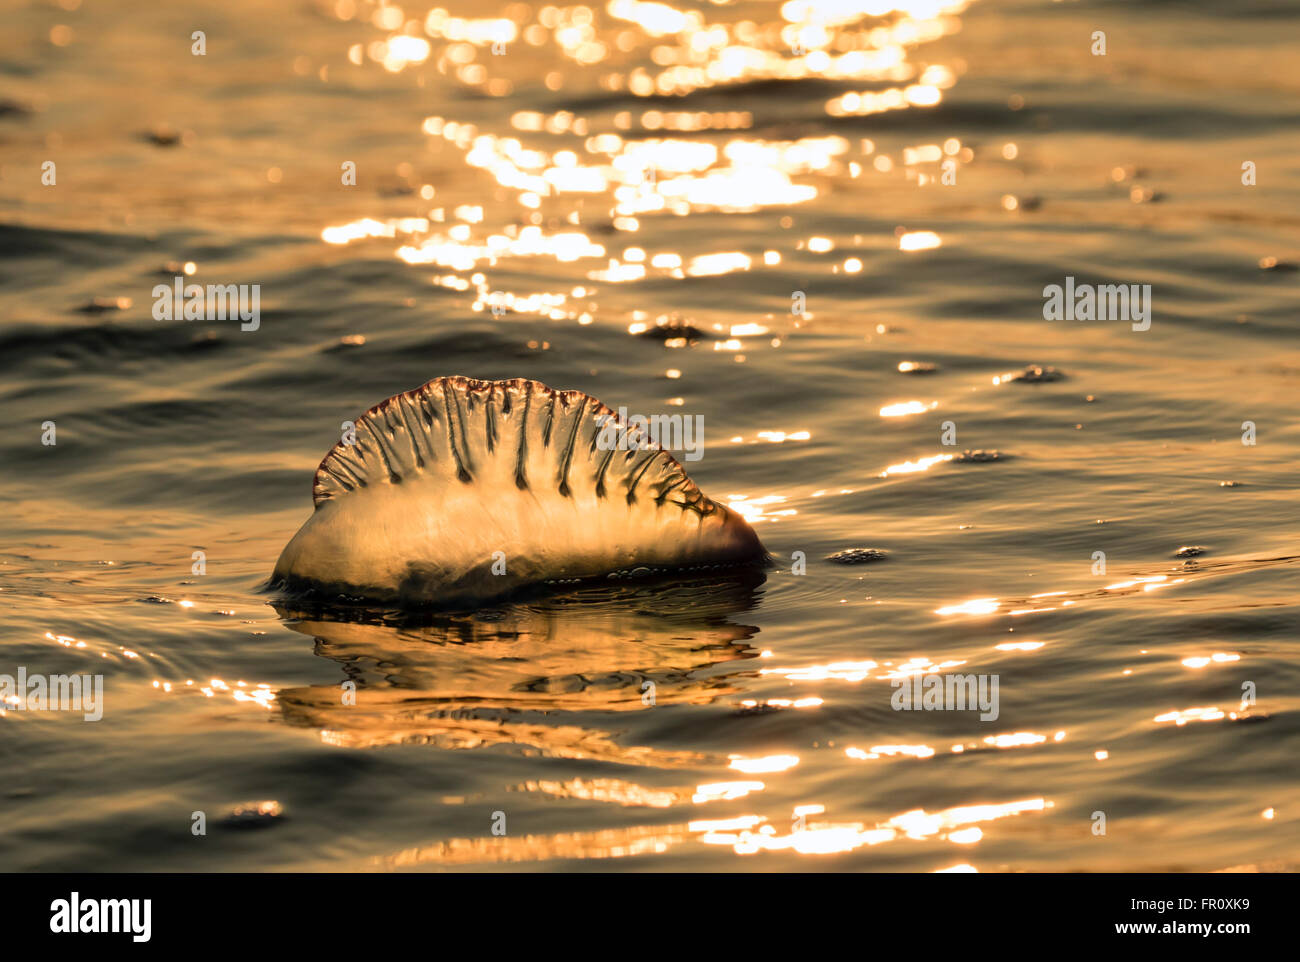 Homme portugais de l'Atlantique o' war (Physalia physalis) flottant dans l'océan au coucher du soleil, Galveston, Texas, États-Unis Banque D'Images